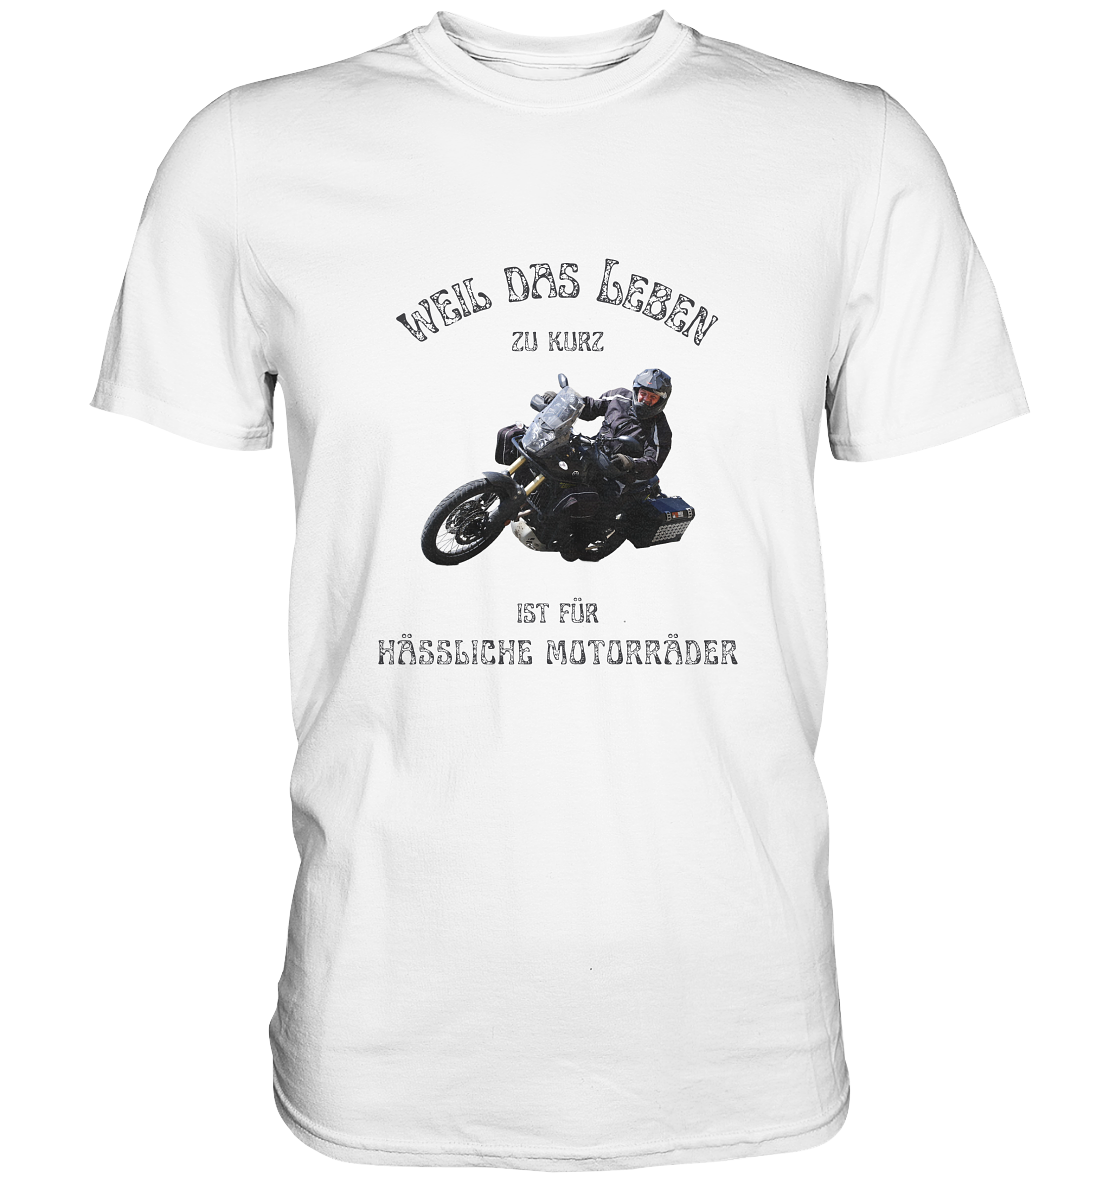 "Weil das Leben zu kurz ist für hässliche Motorräder" | für Bernd individualisiertes Shirt mit Foto-Druck in Top-Qualität und Motorradspruch